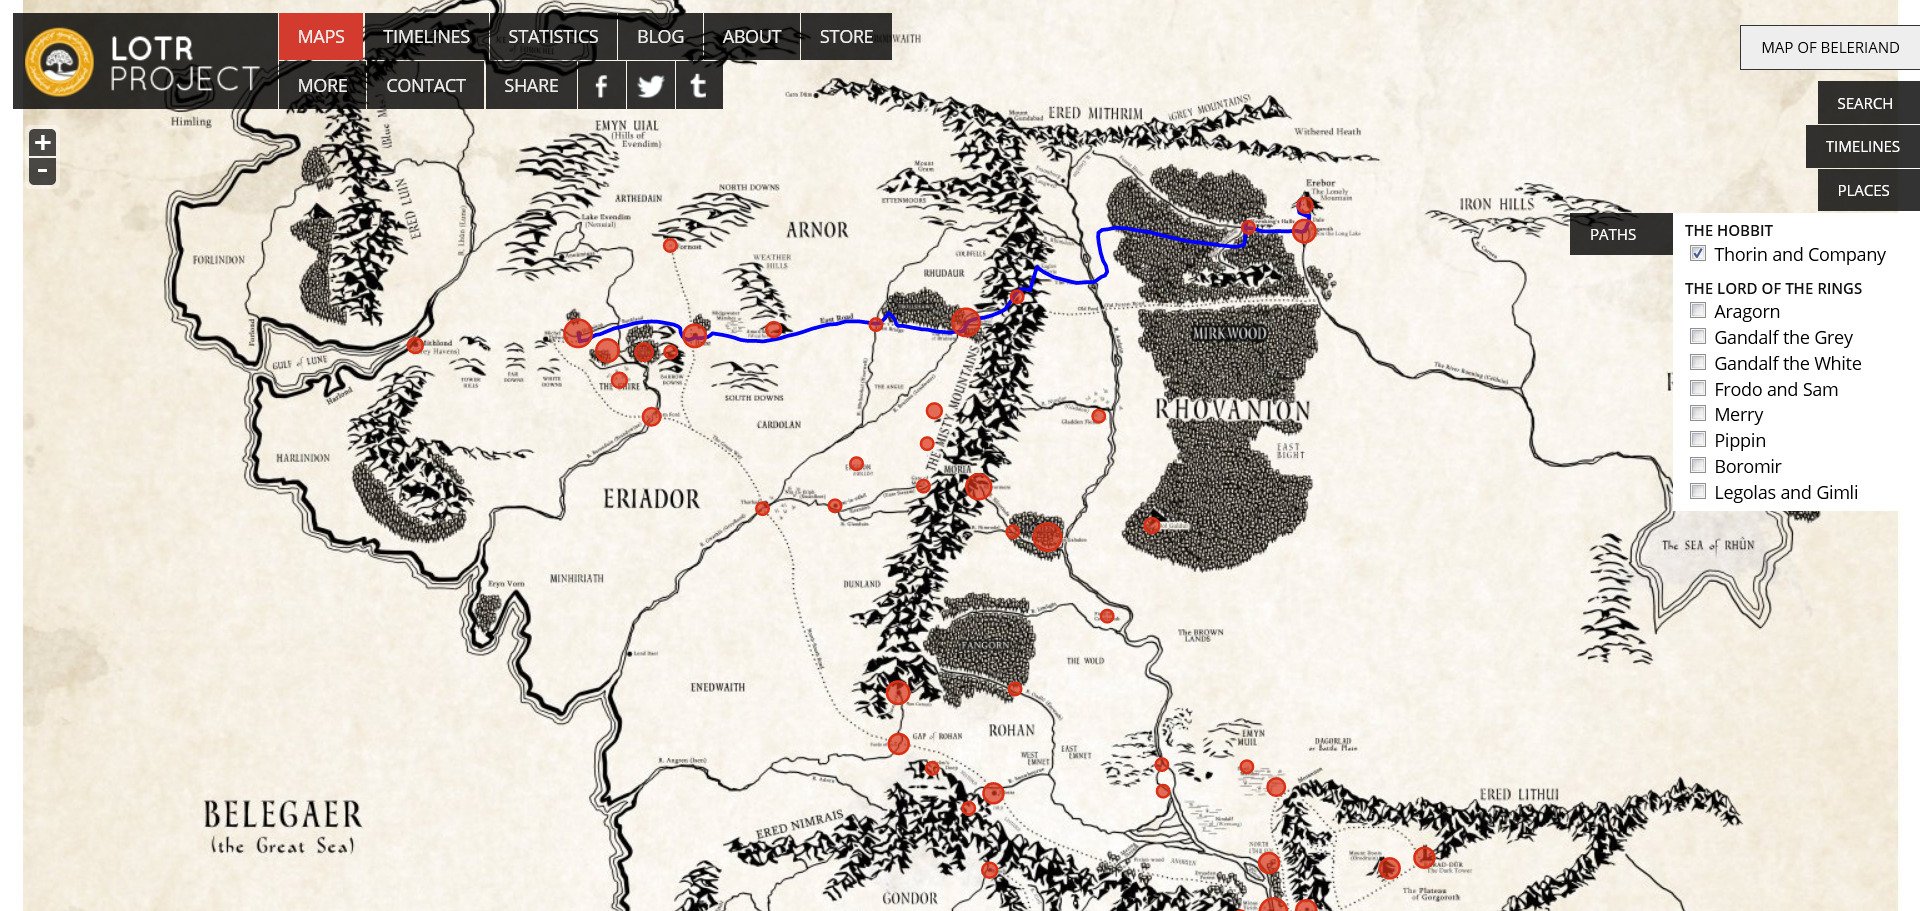 Пути средиземья. Путь Фродо на карте Средиземья. Карта Средиземья Властелин колец путь Фродо. Путешествие Фродо на карте Средиземья. Карта Средиземья Толкиена путь Фродо.